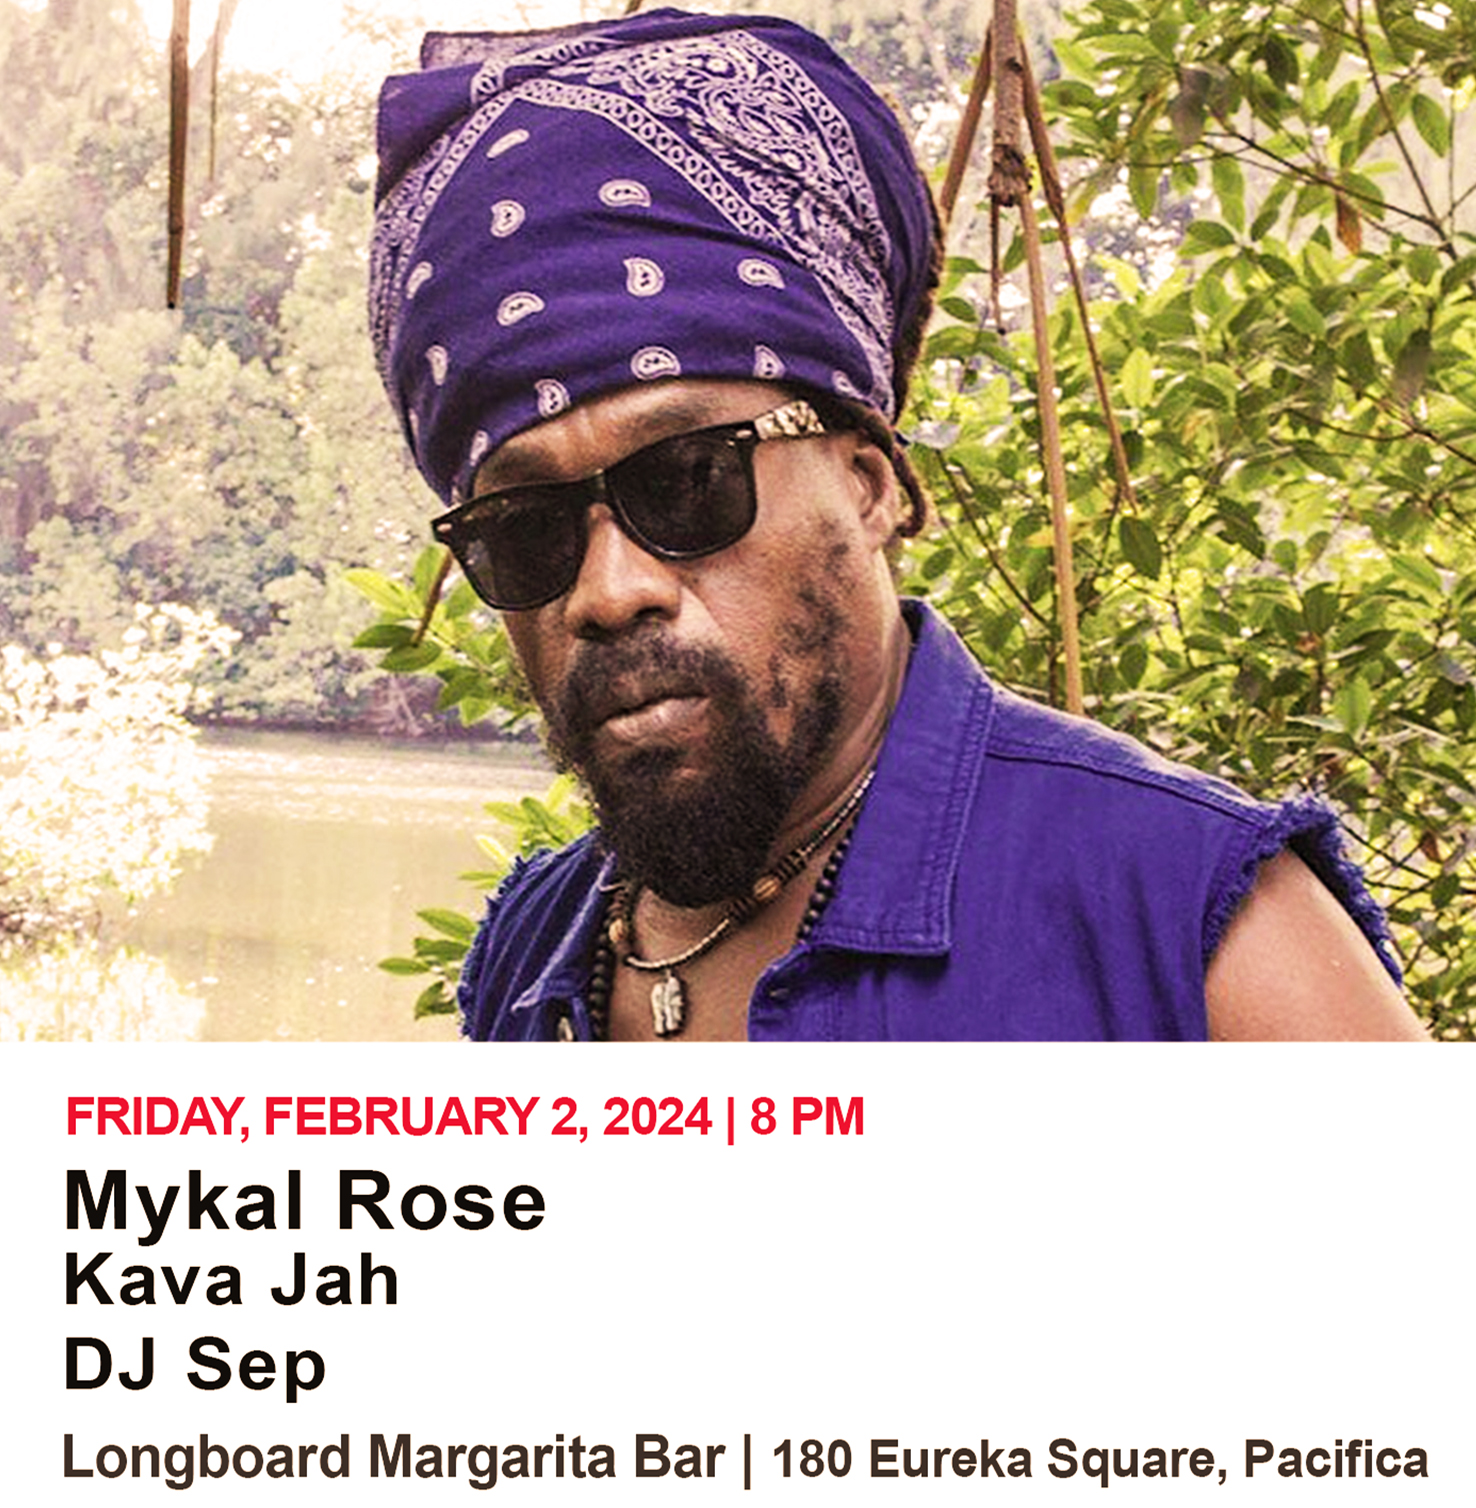 Mykal Rose, Kava Jah, and DJ Sep at Longboard Margarita Bar (Pacifica